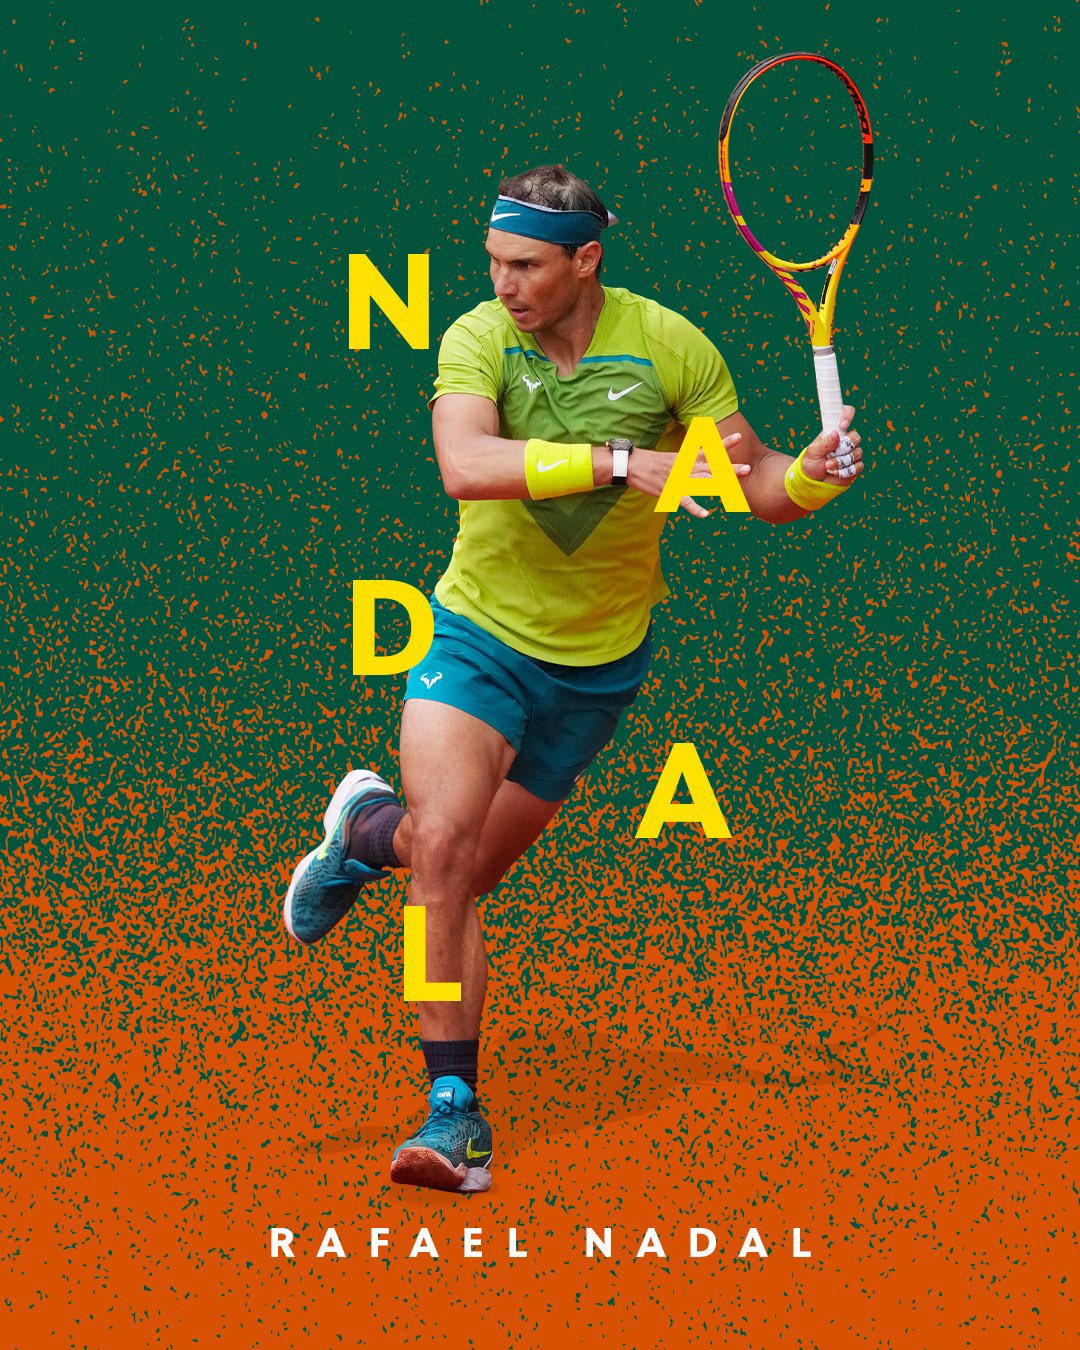 Unique. Impressive. Unforgettable. Rafael. Nadal. Happy birthday, champ! 